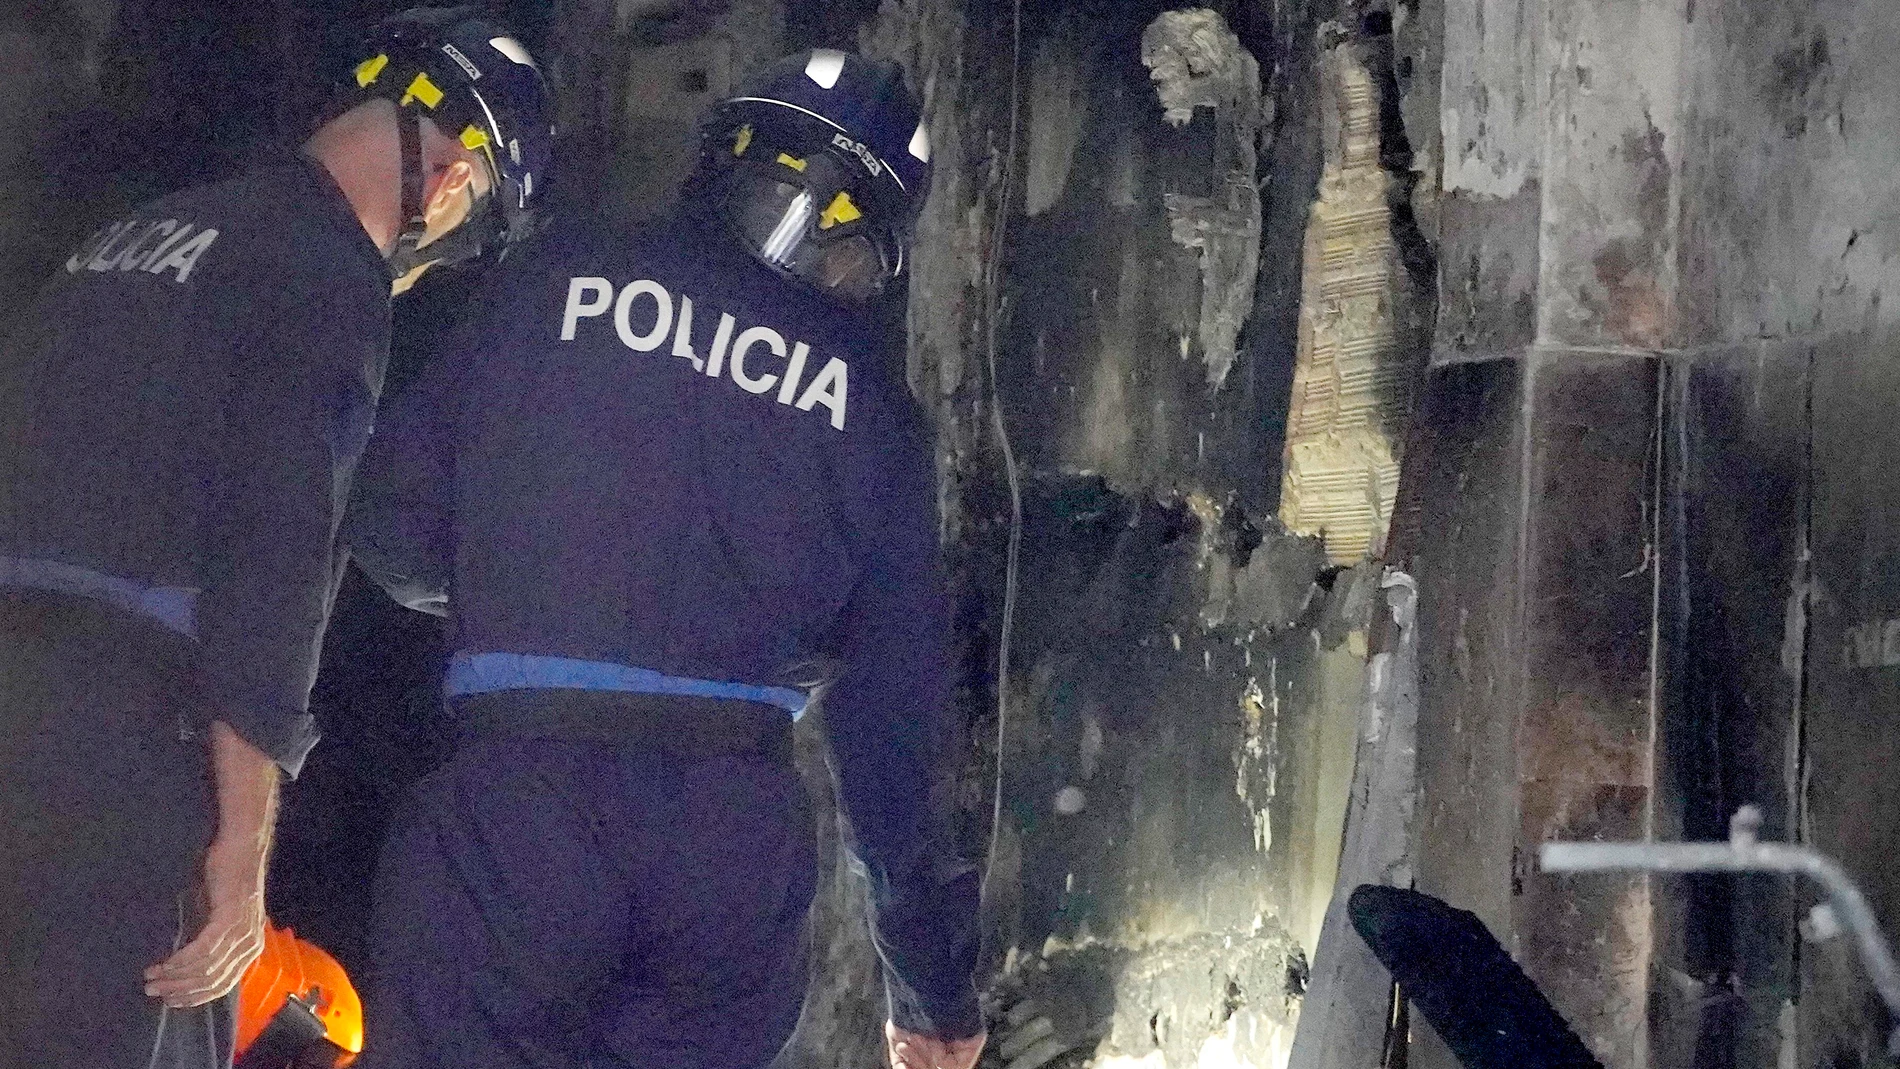 Dos agentes de policía trabajaban ayer en el edificio incendiado en el número 6 de la calle Alfonso X El Sabio de Vigo